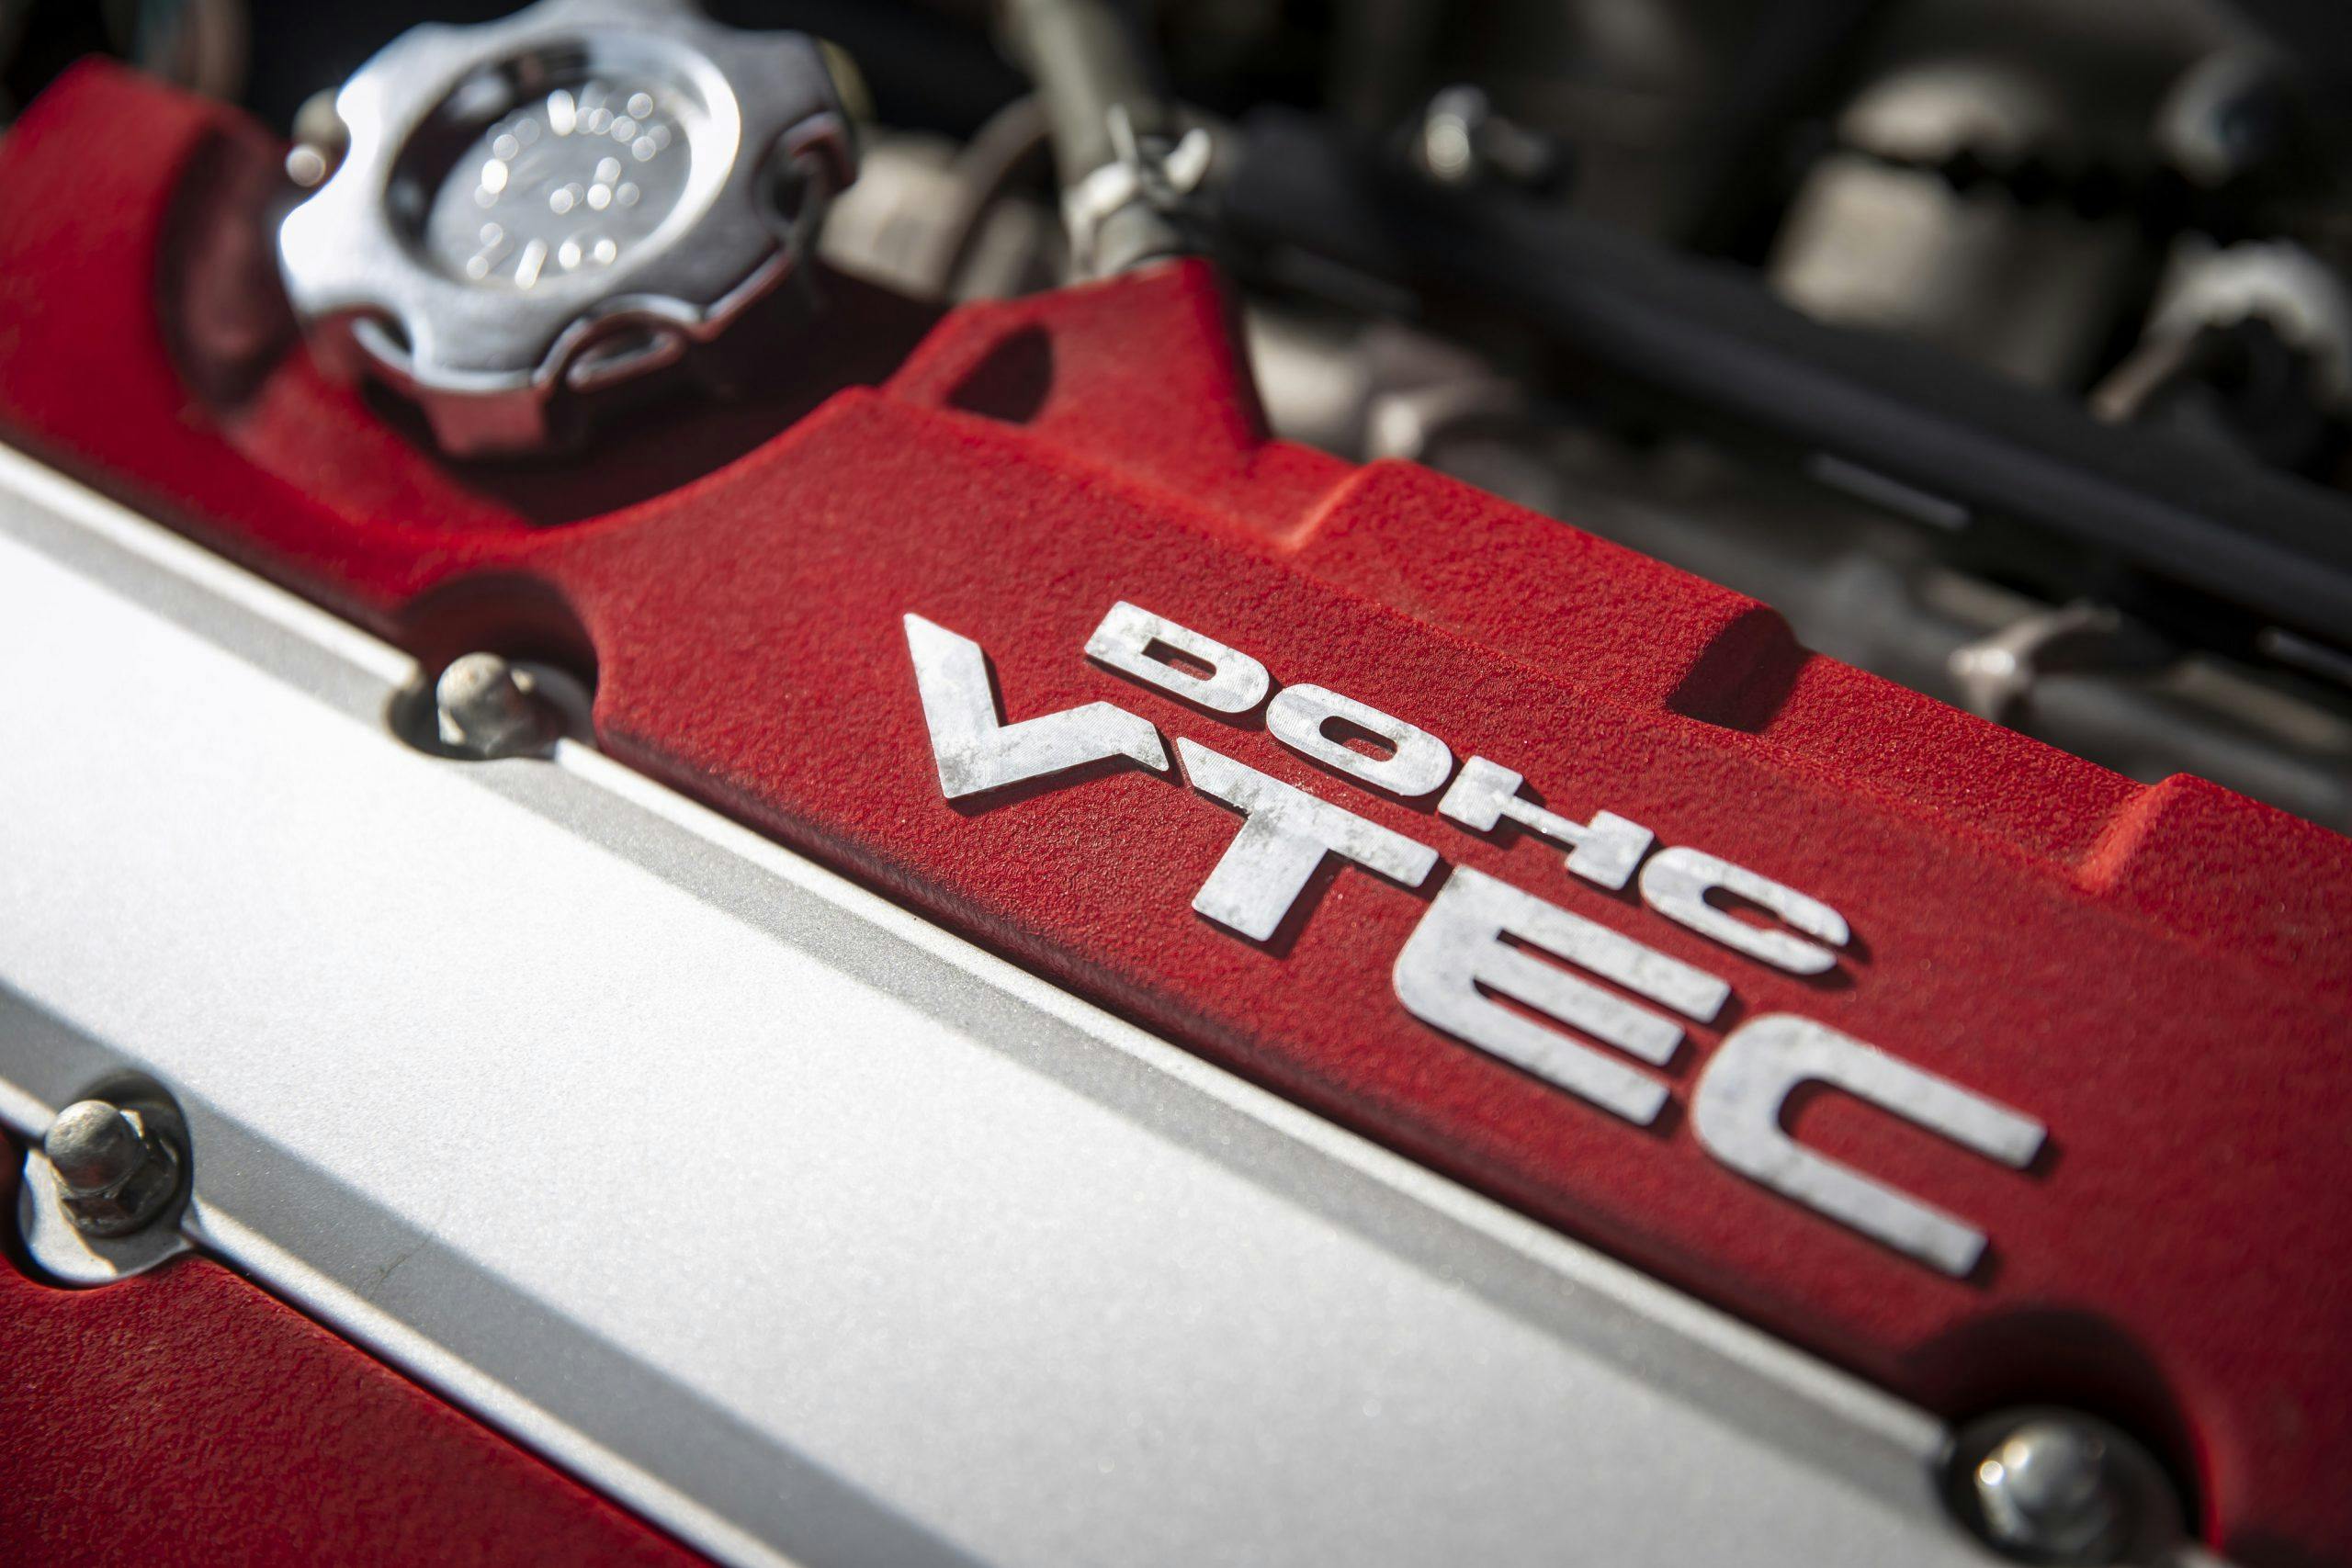 Honda Civic Type-R engine detail